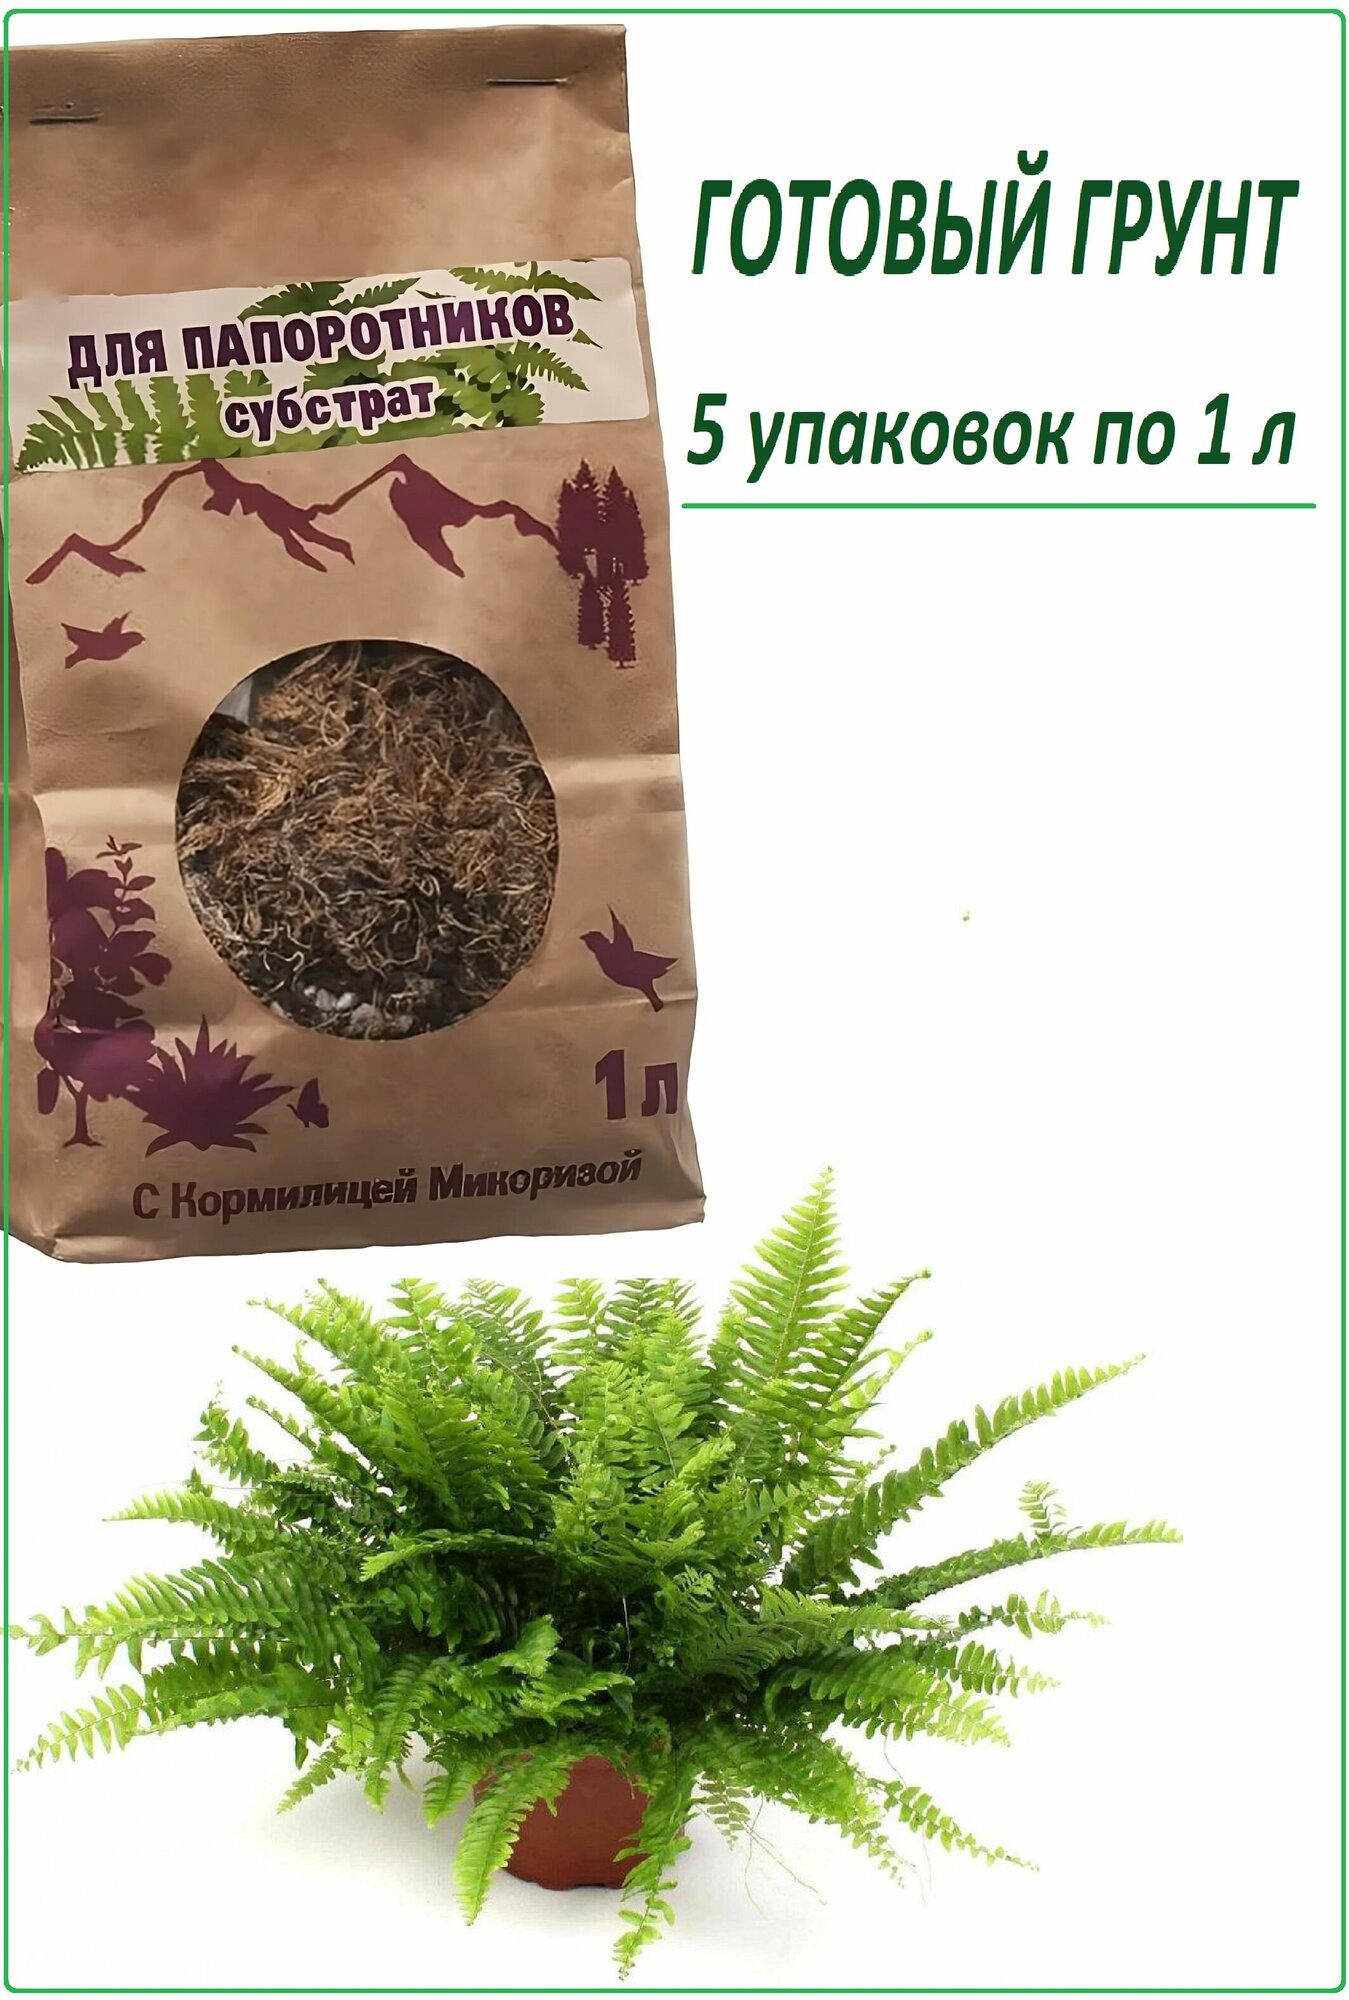 Субстрат для папоротников с микоризой 5 шт по 1 л. Для домашних растений, стимулирует рост корней, формирует пышную зеленую массу, предотвращает пожелтение